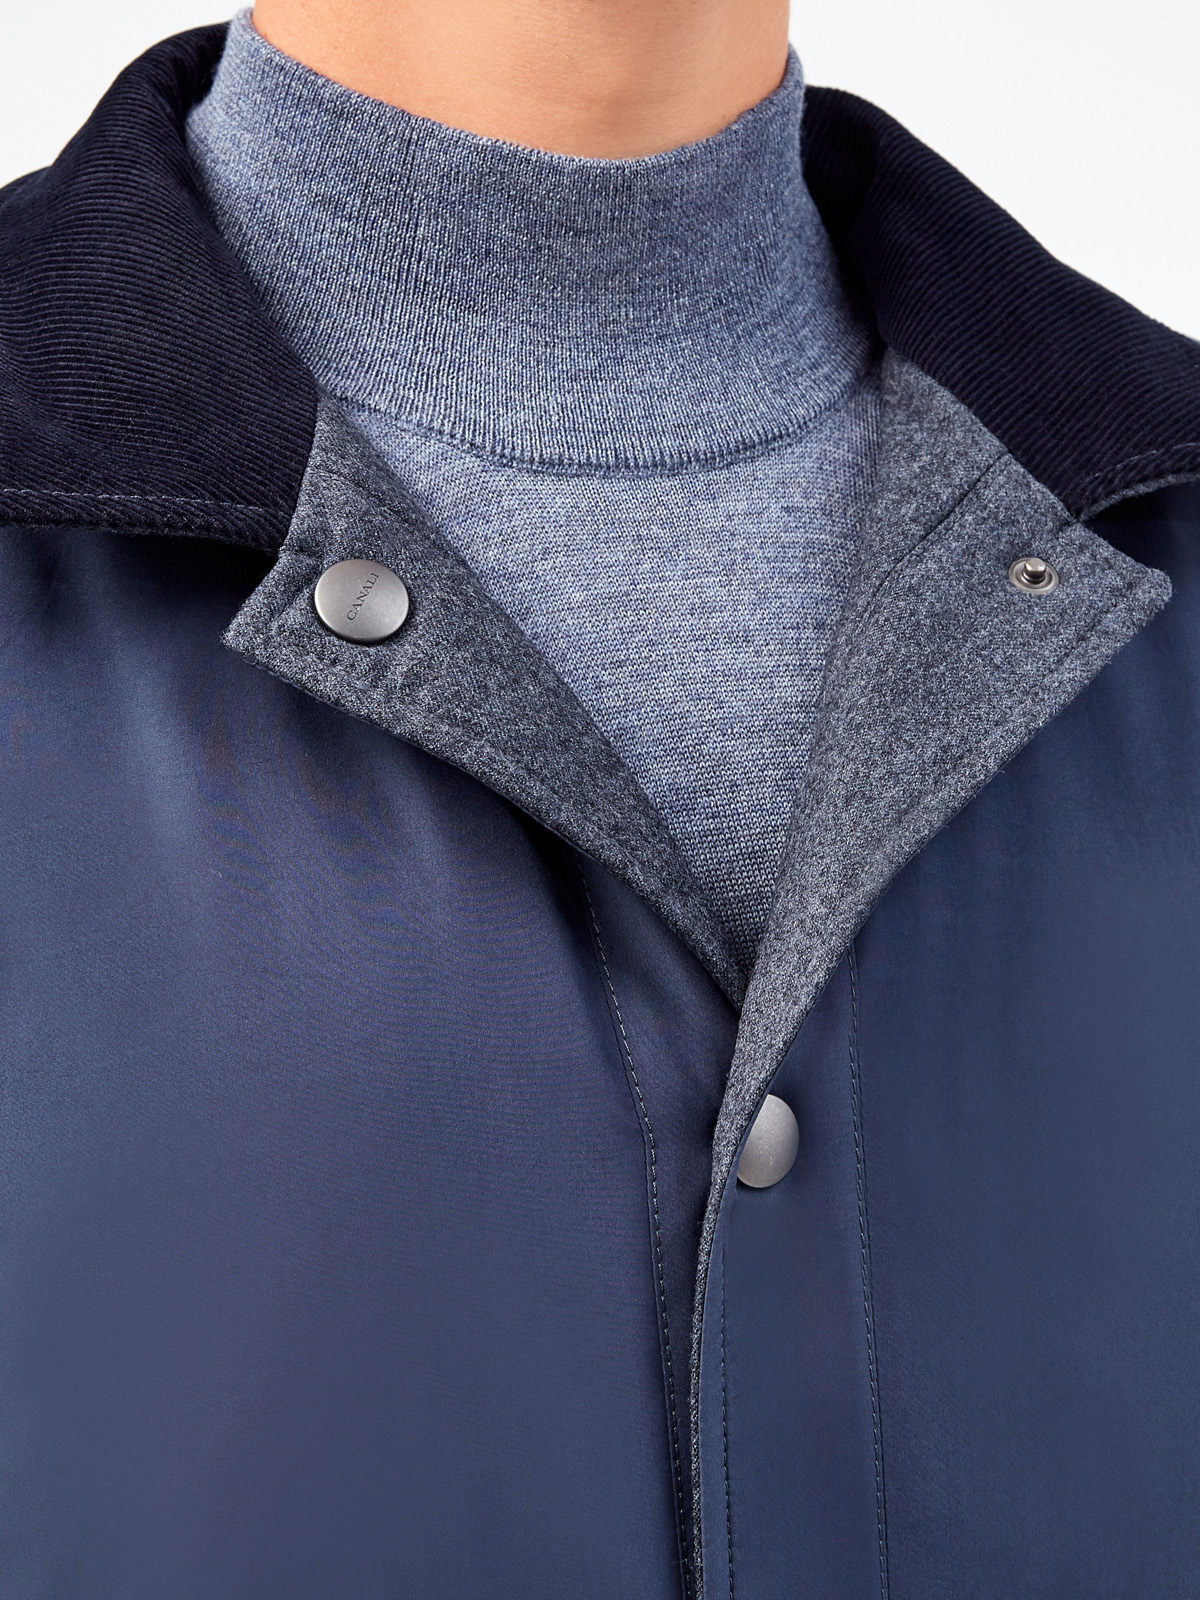 Двусторонняя куртка из плотной шерсти, кашемира и нейлона CANALI, цвет синий, размер 48;56;58 - фото 7